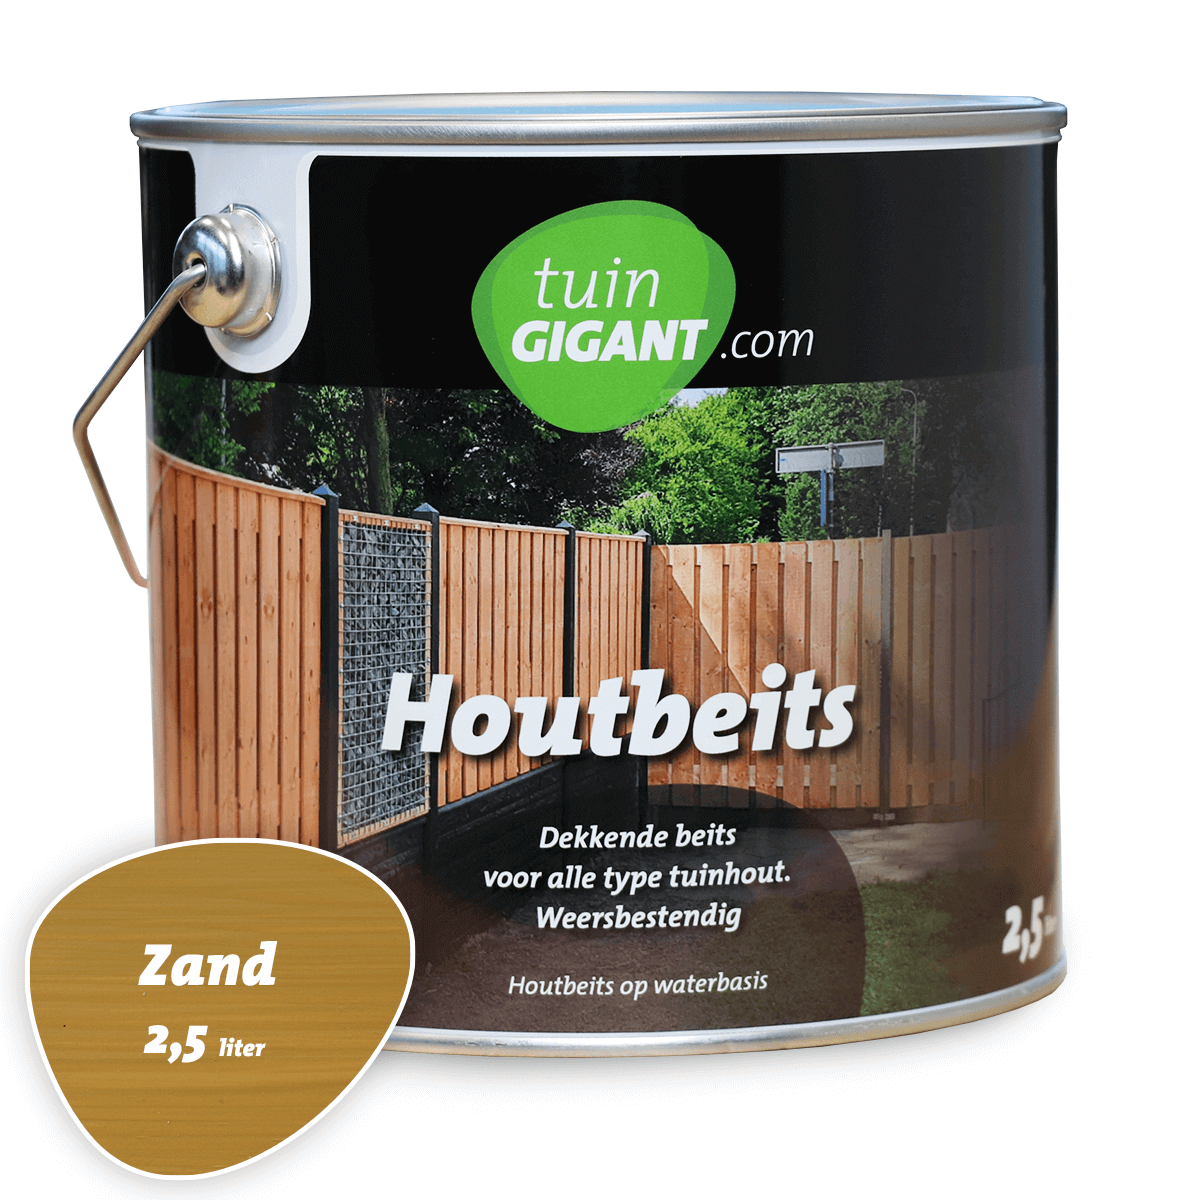 Motiveren Moreel afschaffen Houtbeits - Zand - 1 tot 2,5 liter - Tuingigant.com